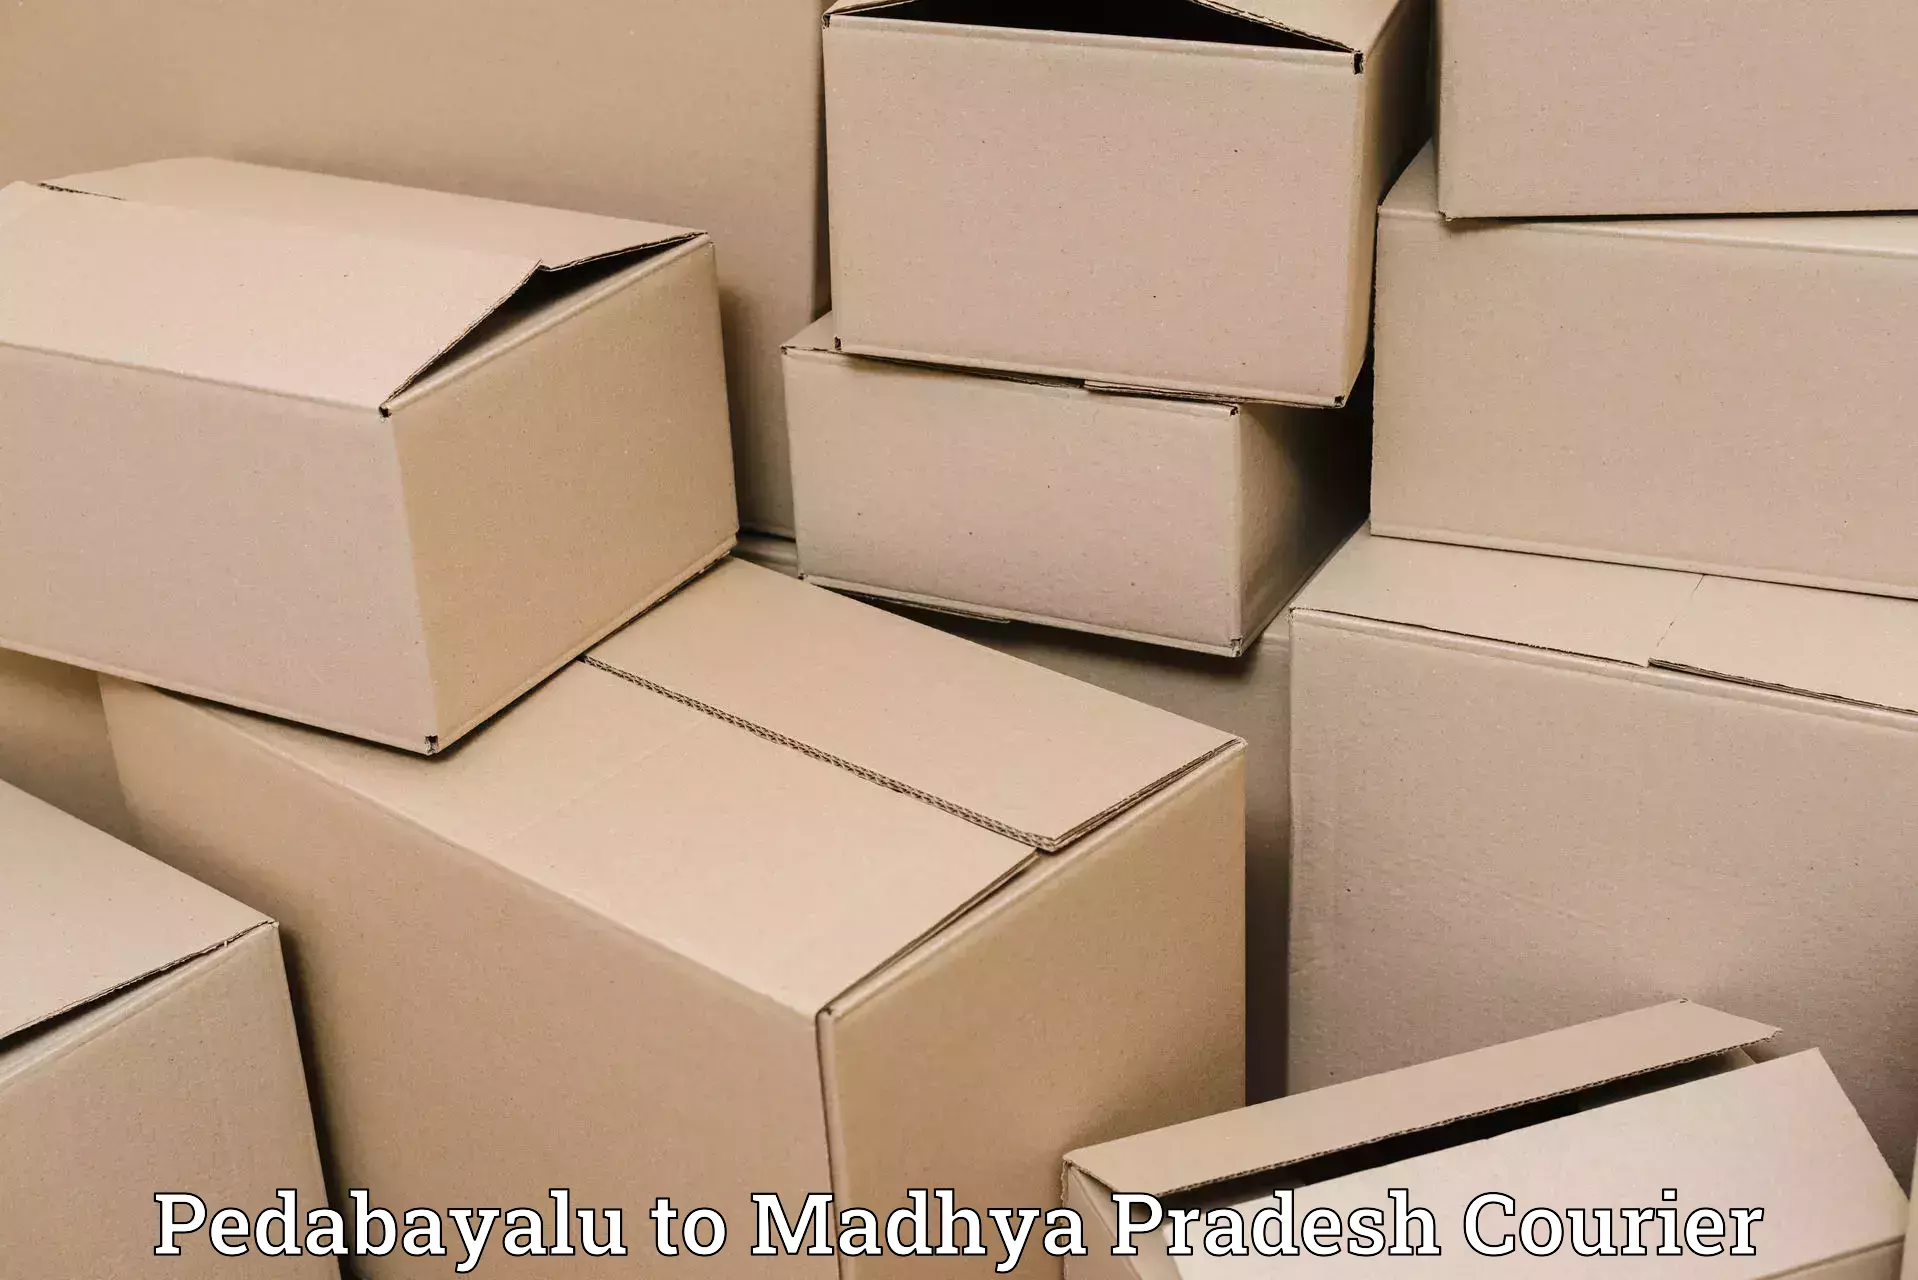 Efficient parcel service Pedabayalu to Khategaon